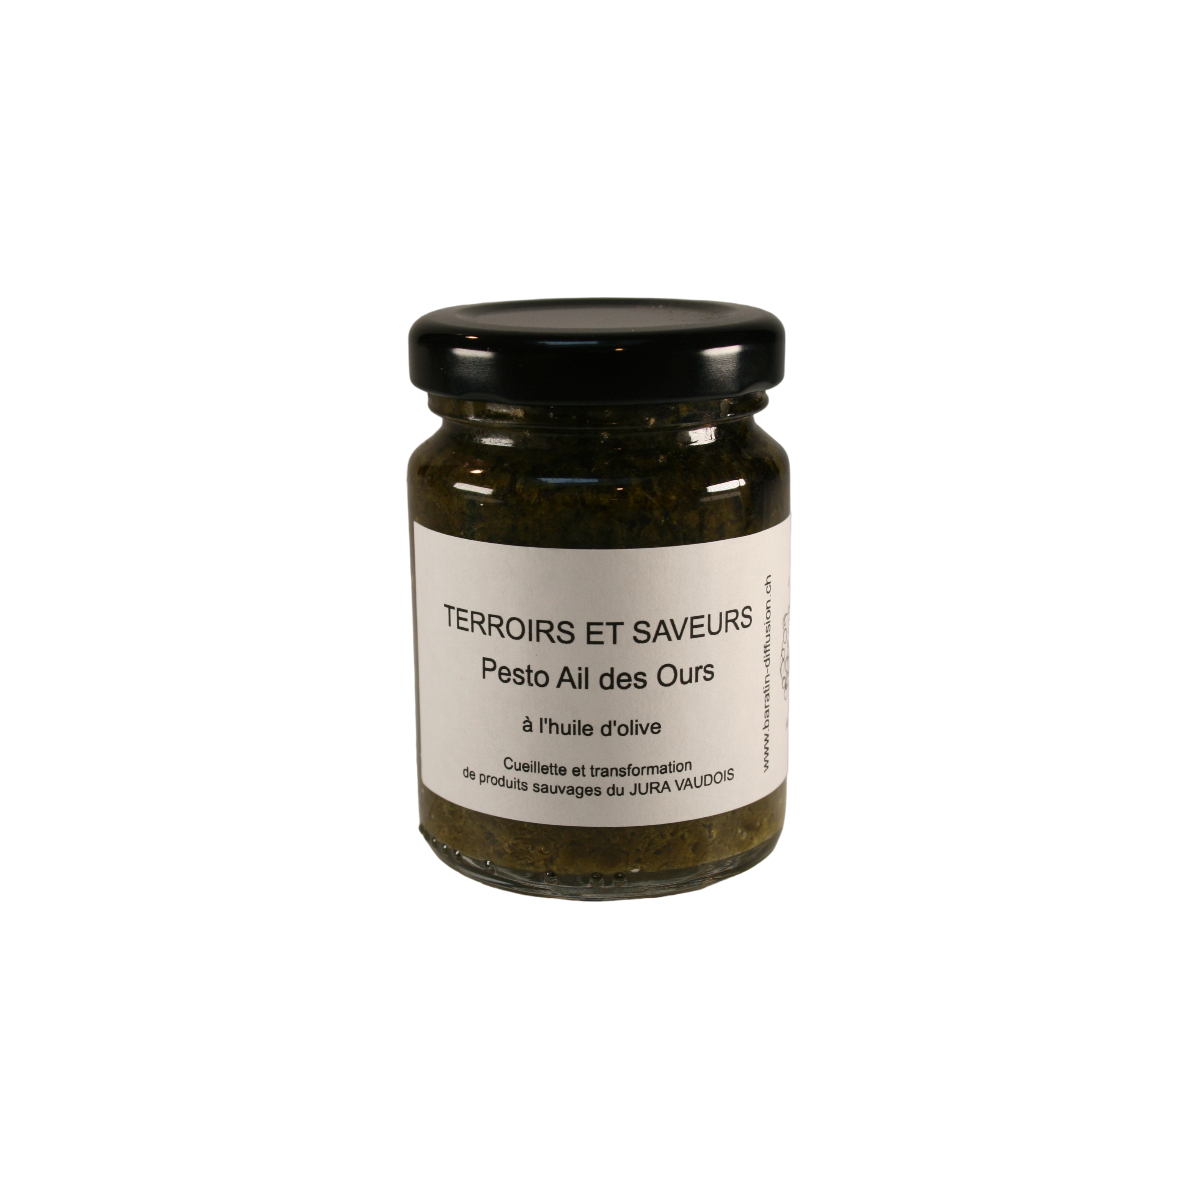 Pesto artisanal d’Ail des Ours Sauvages du Jura Vaudois à l’huile d’olive